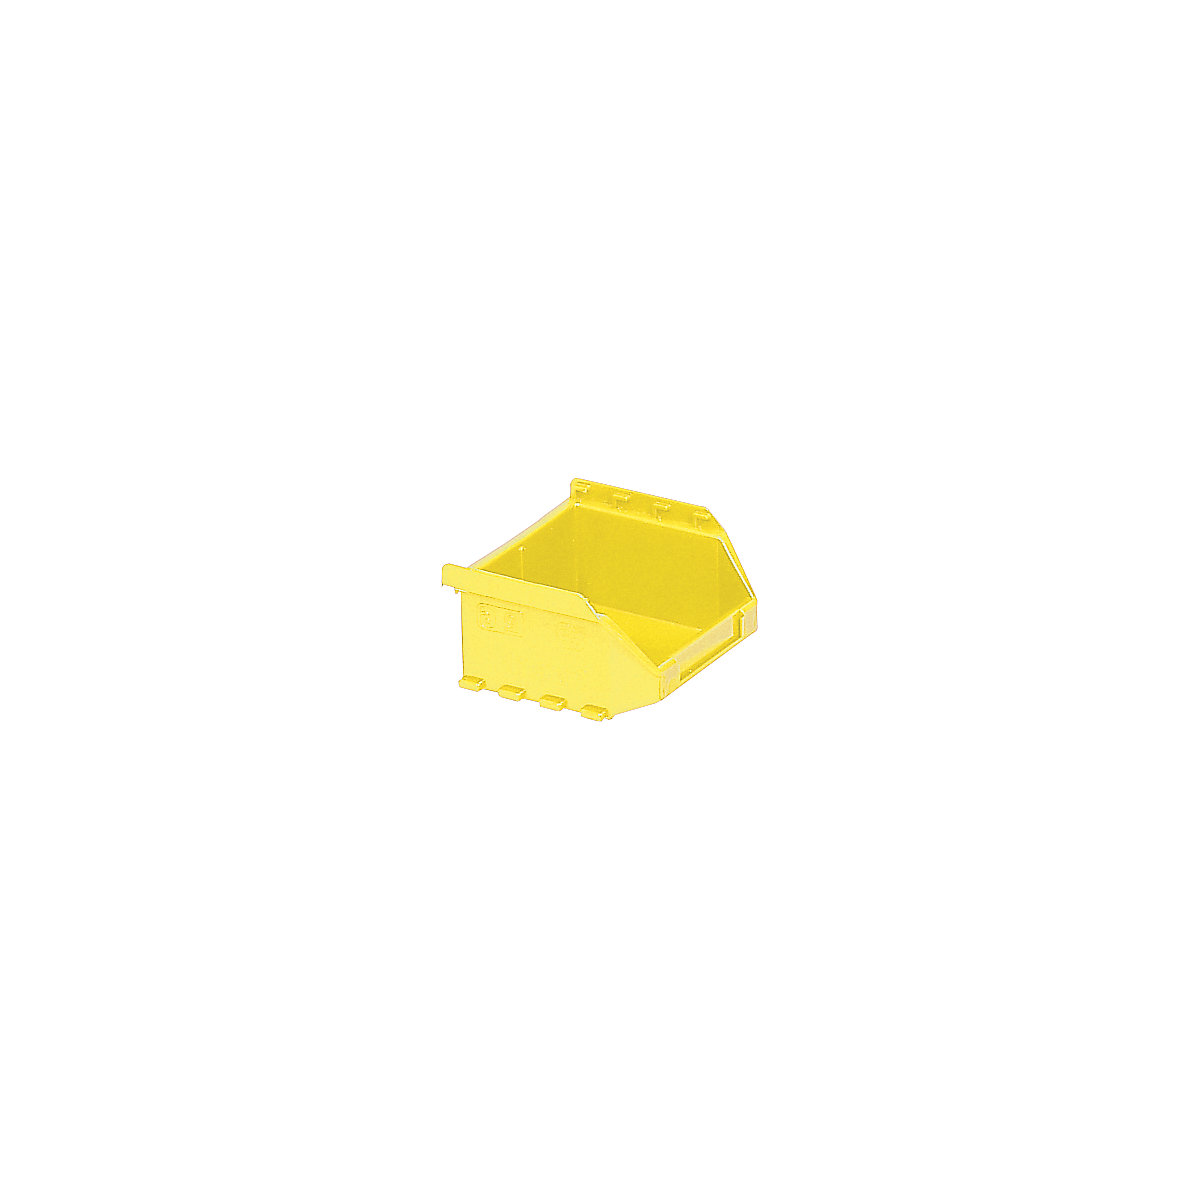 Otvorena skladišna kutija od polietilena FUTURA, DxŠxV 85 x 98 x 50 mm, pak. 50 kom., u žutoj boji-16